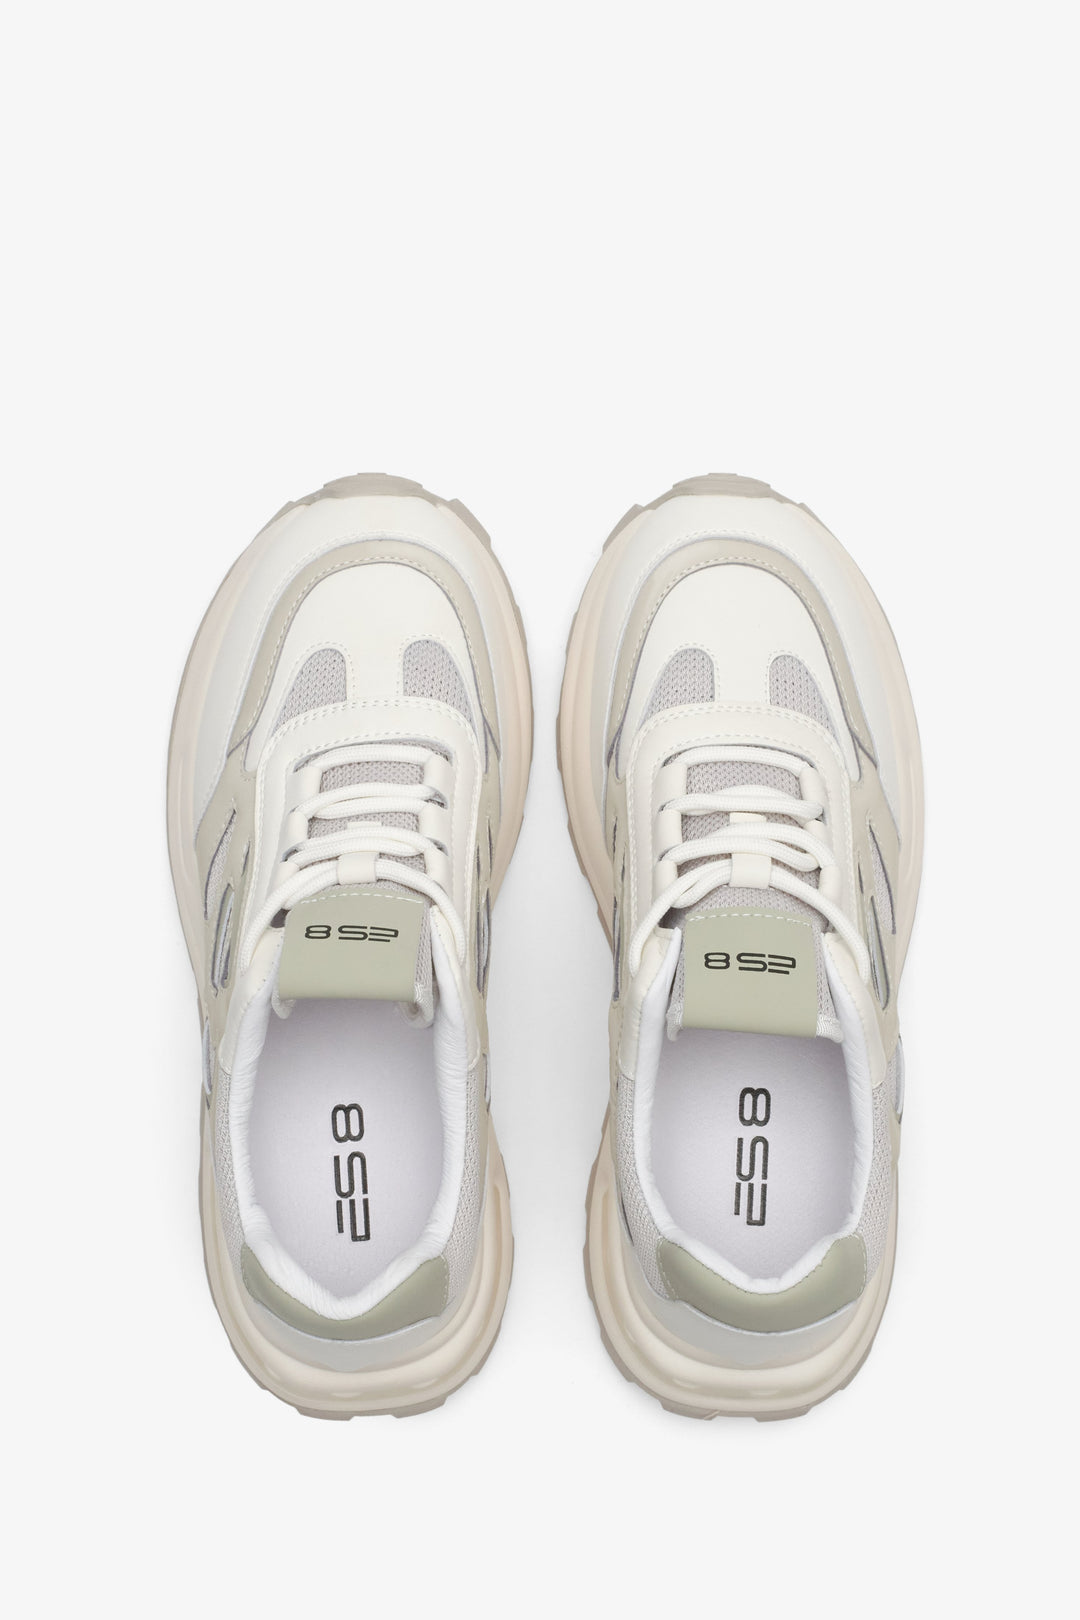 Sneakersy damskie z łączonych materiałów ES8 w kolorze jasnobeżowym - prezentacja modelu z góry.